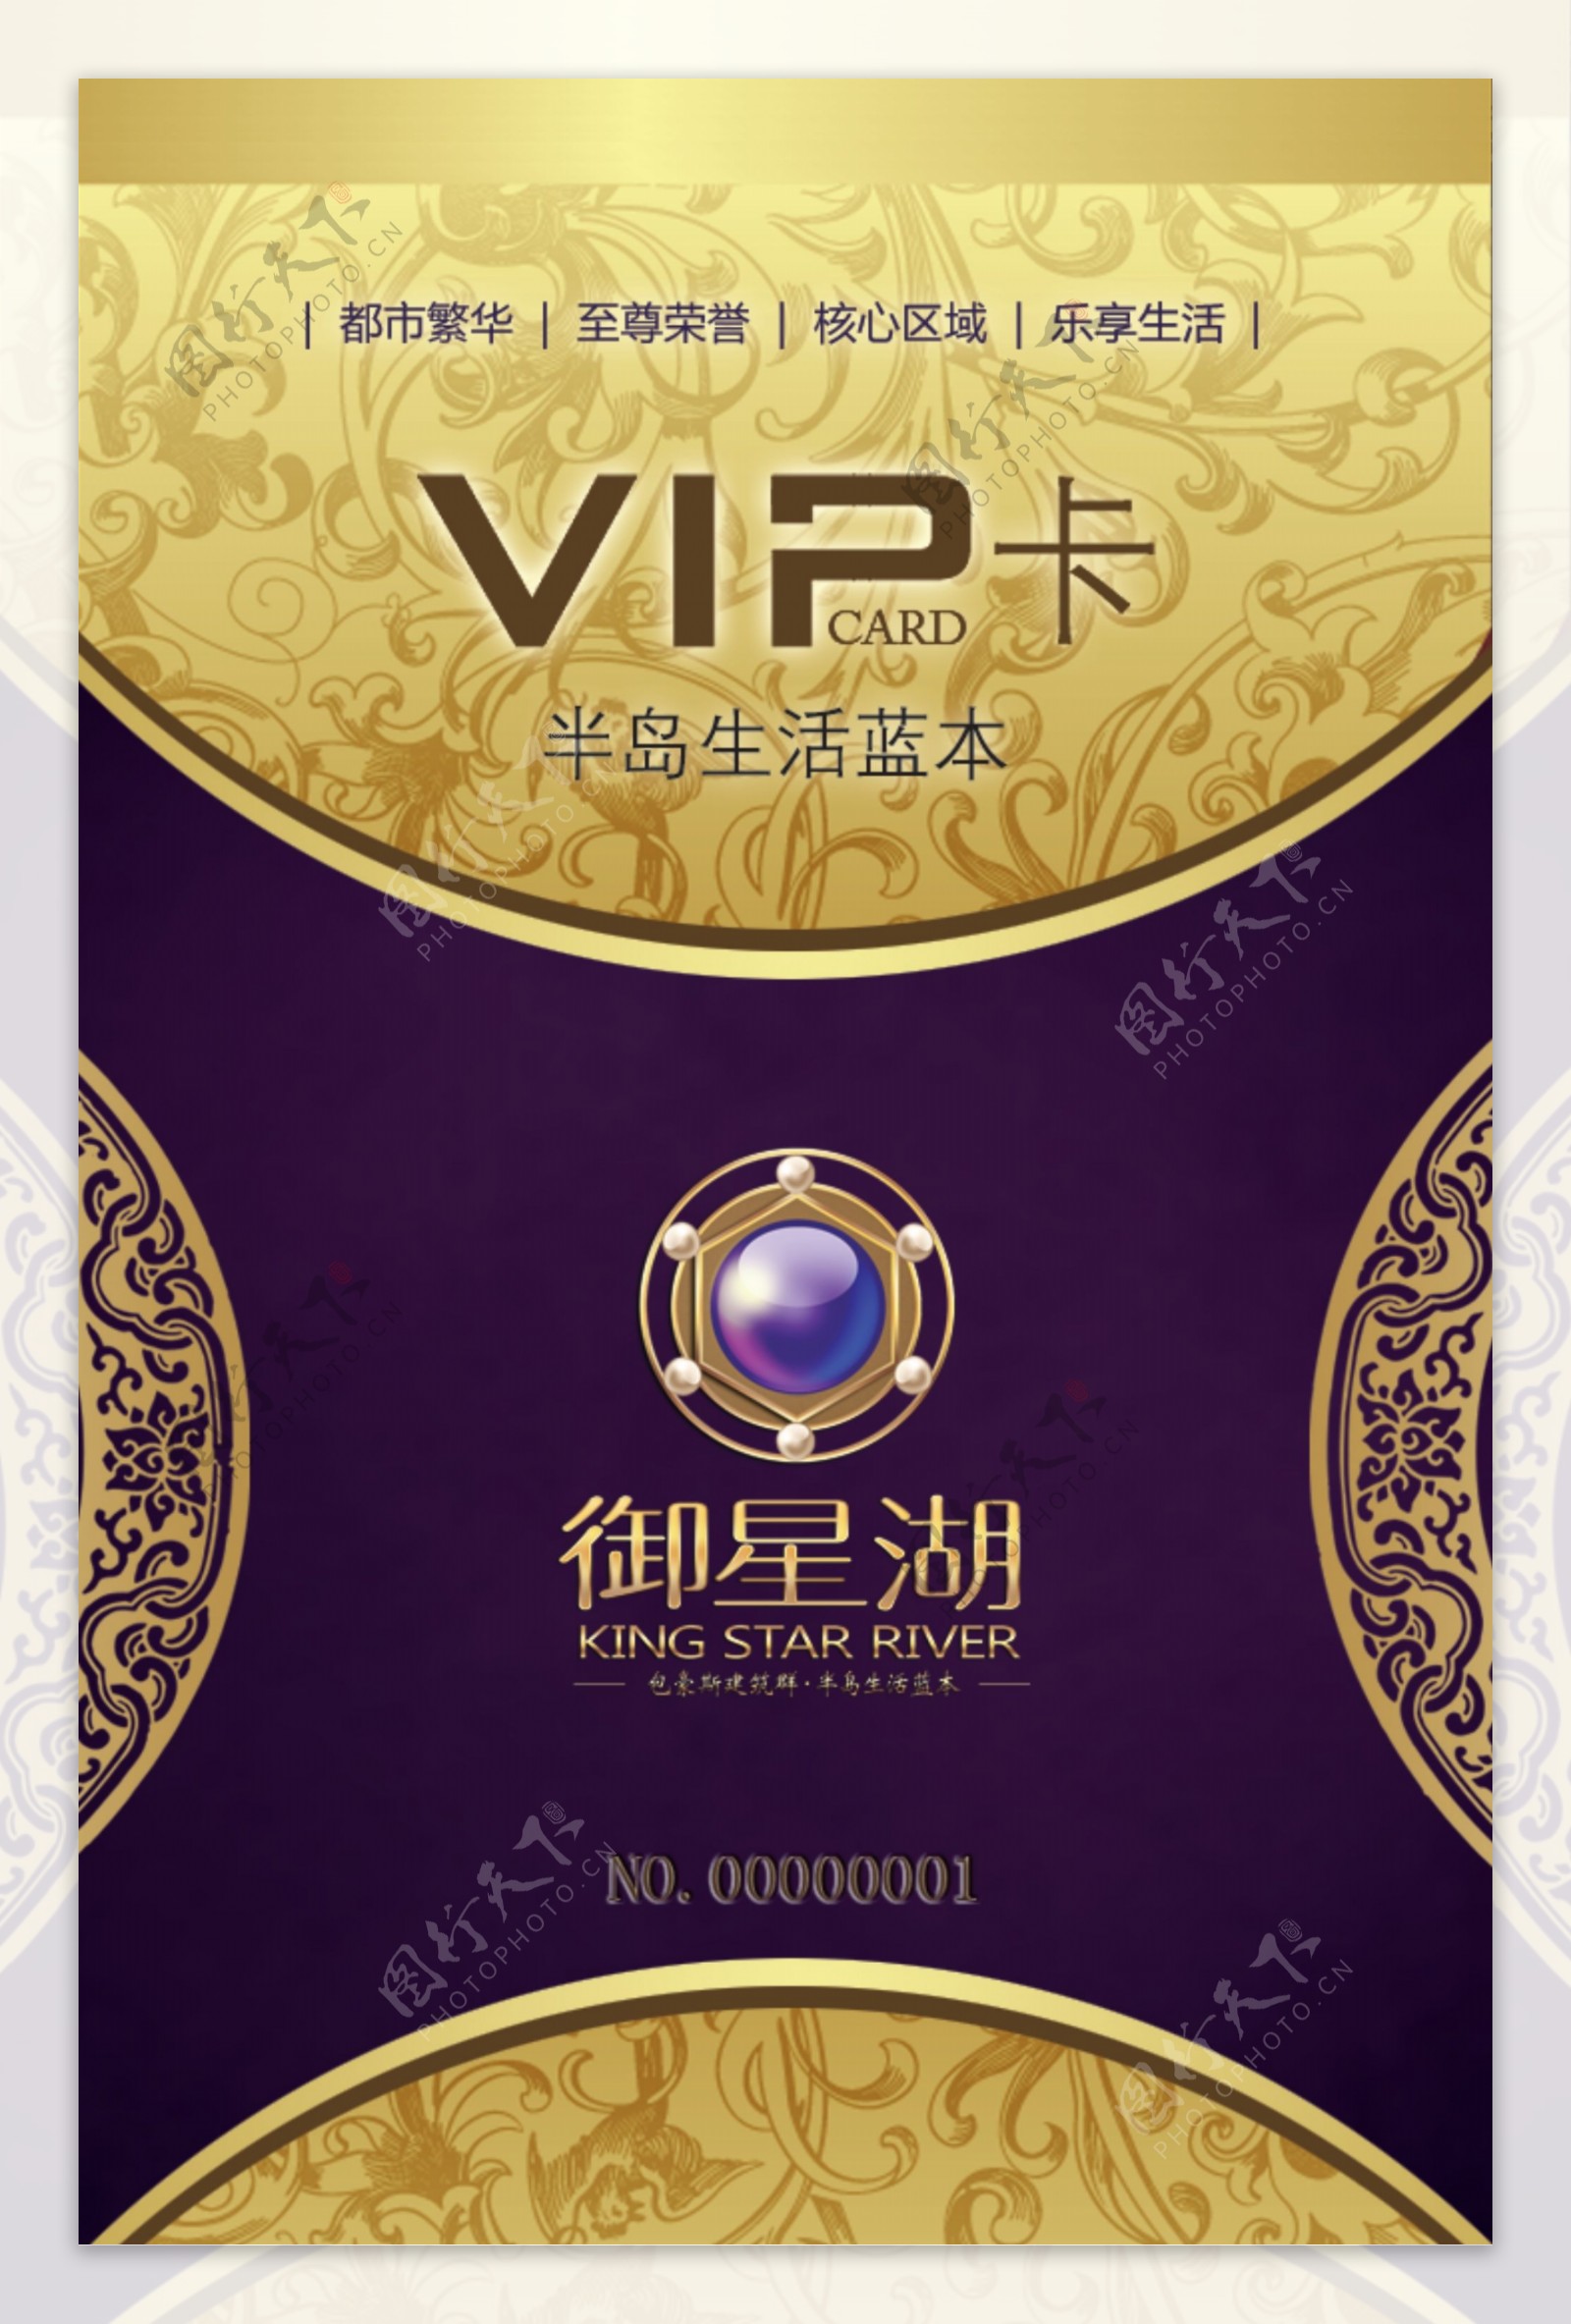 御星湖VIP卡VI设计宣传画册分层PSD